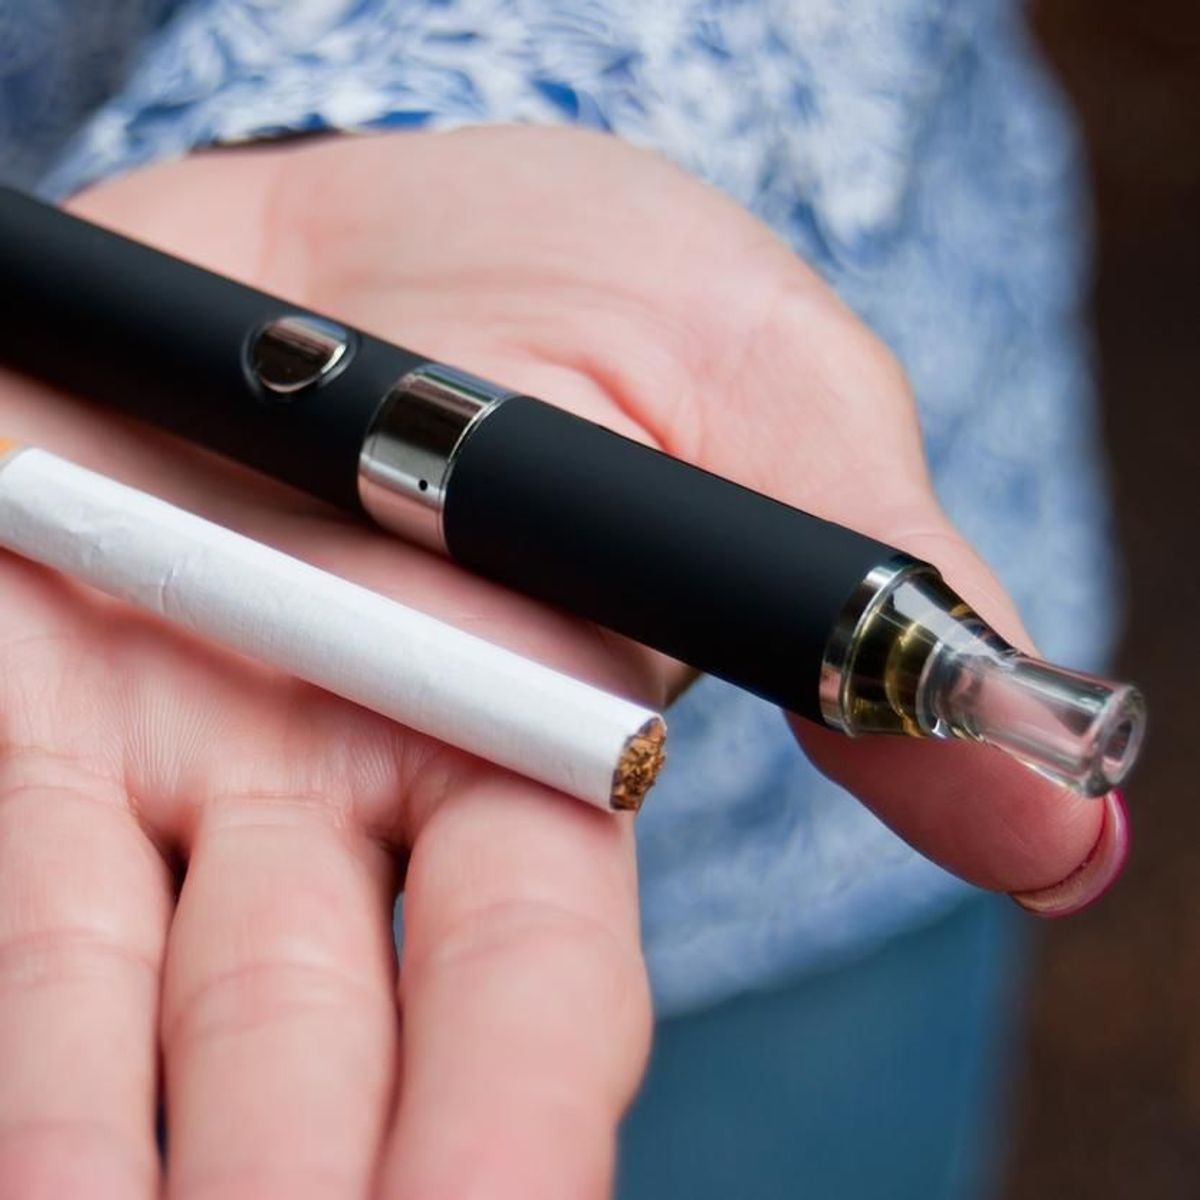 L’utilisation d’e-cigarettes n’est pas associée au risque de maladie cardiovasculaire à moyen terme